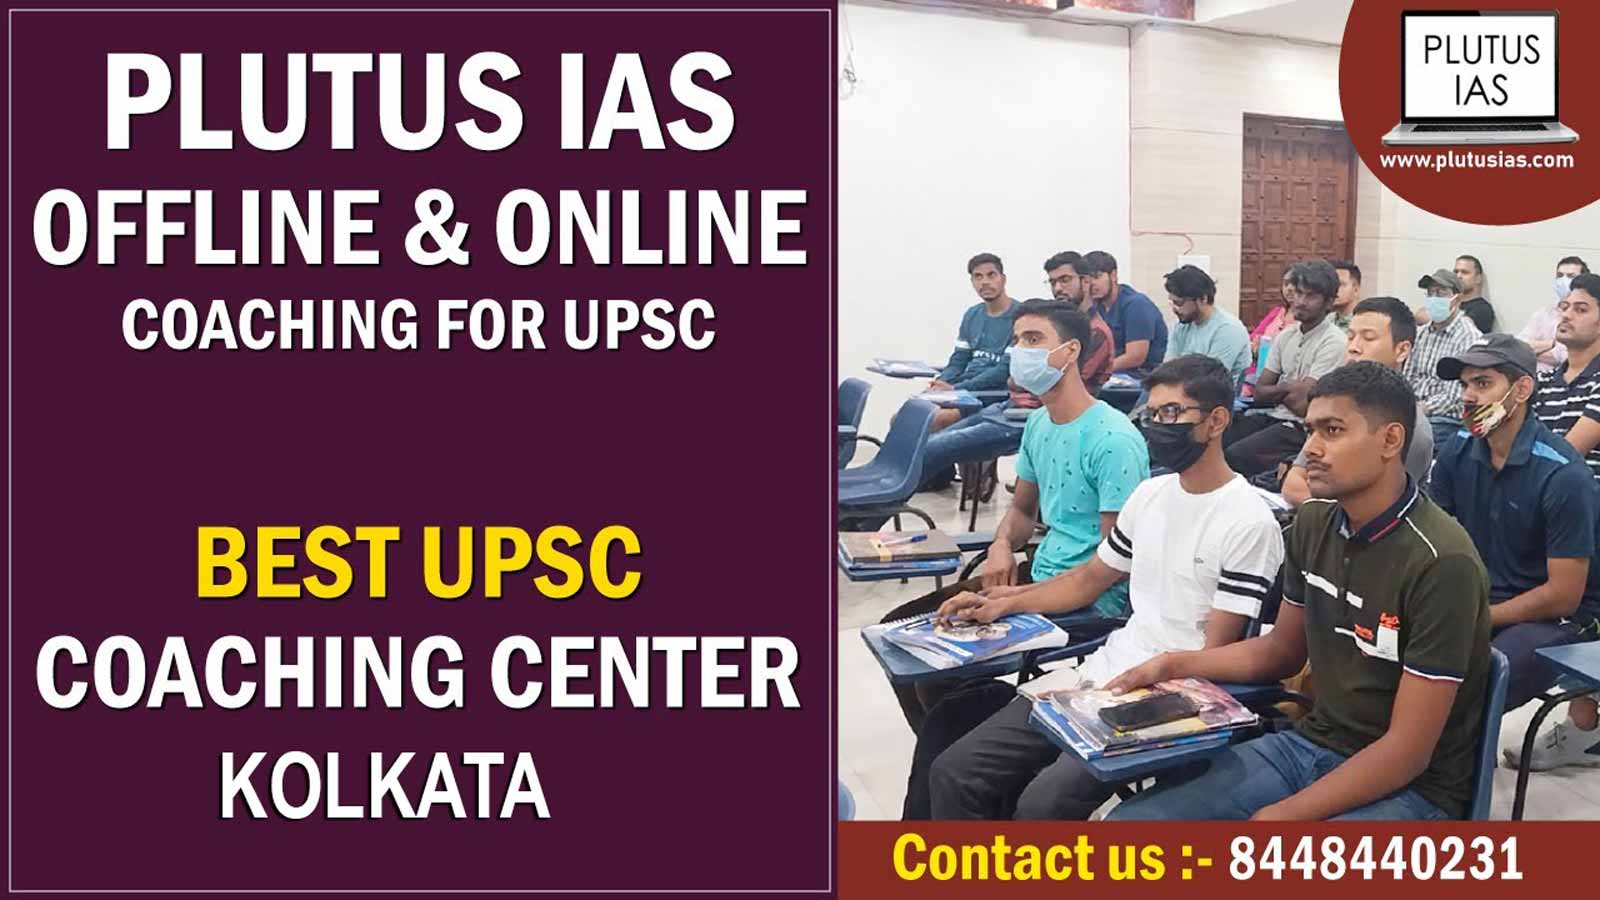 Plutus IAS Coaching Kolkata Review